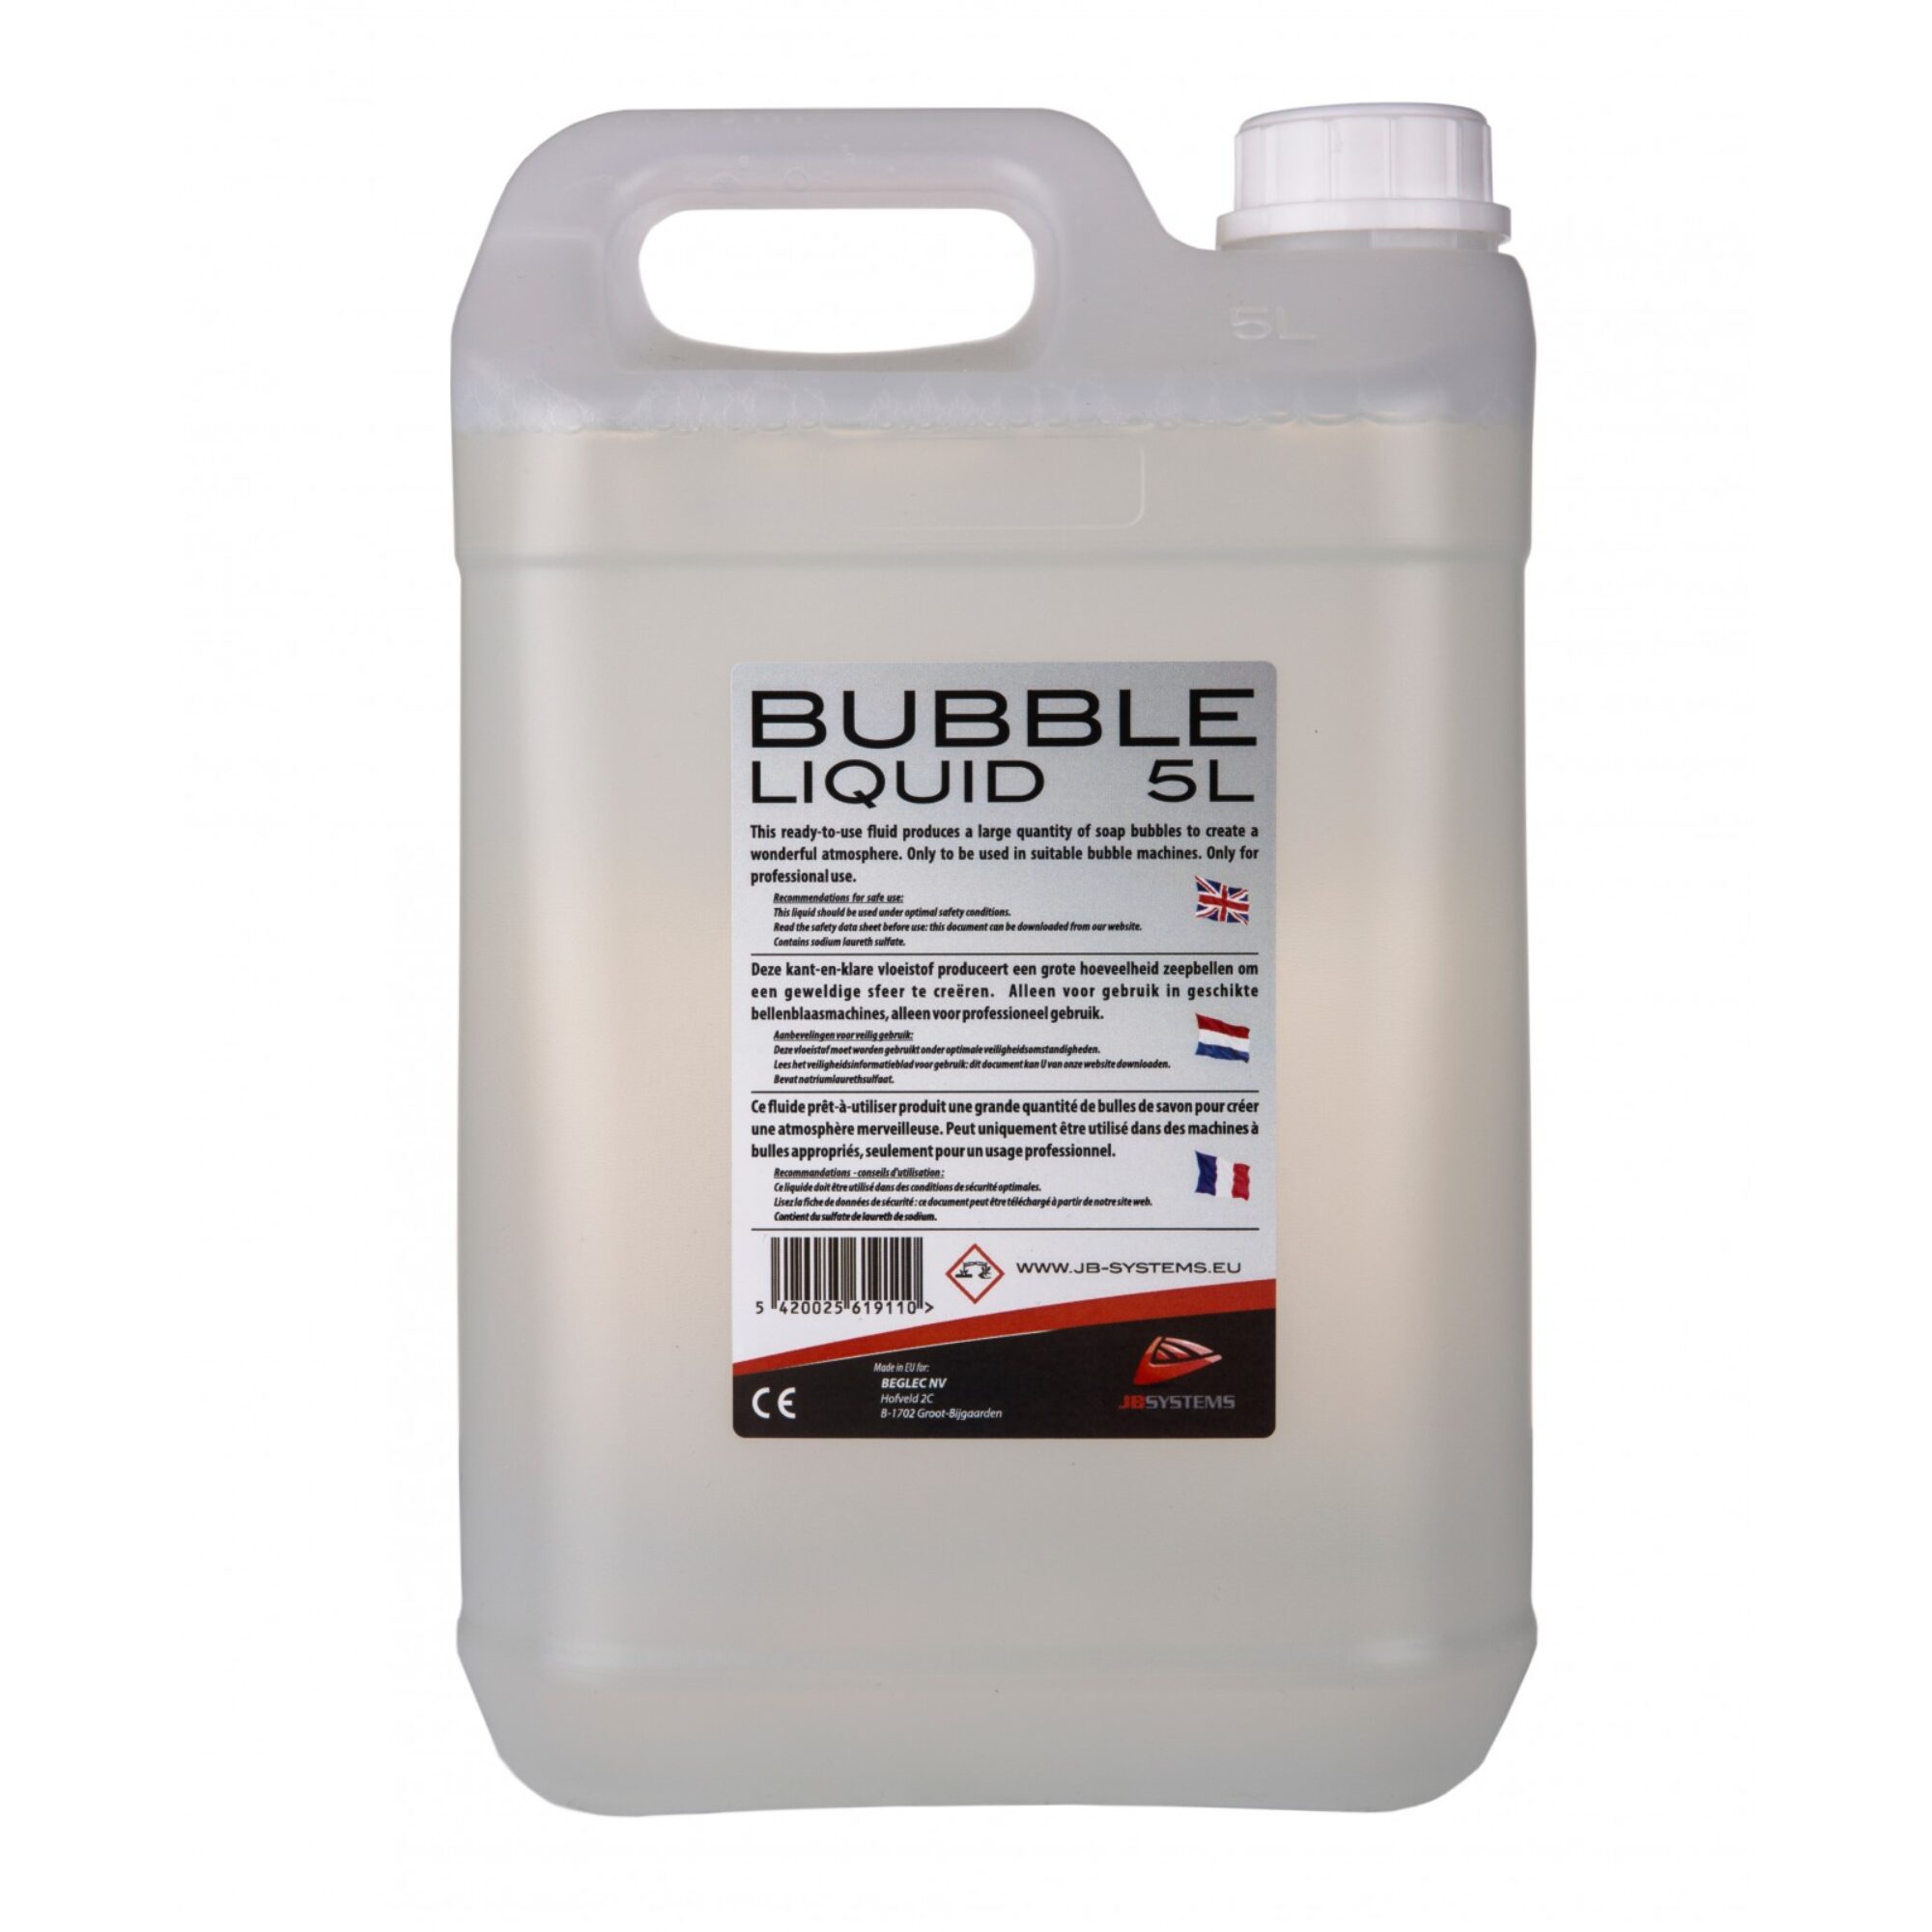 Jbsystems Bubble Liquide 5L